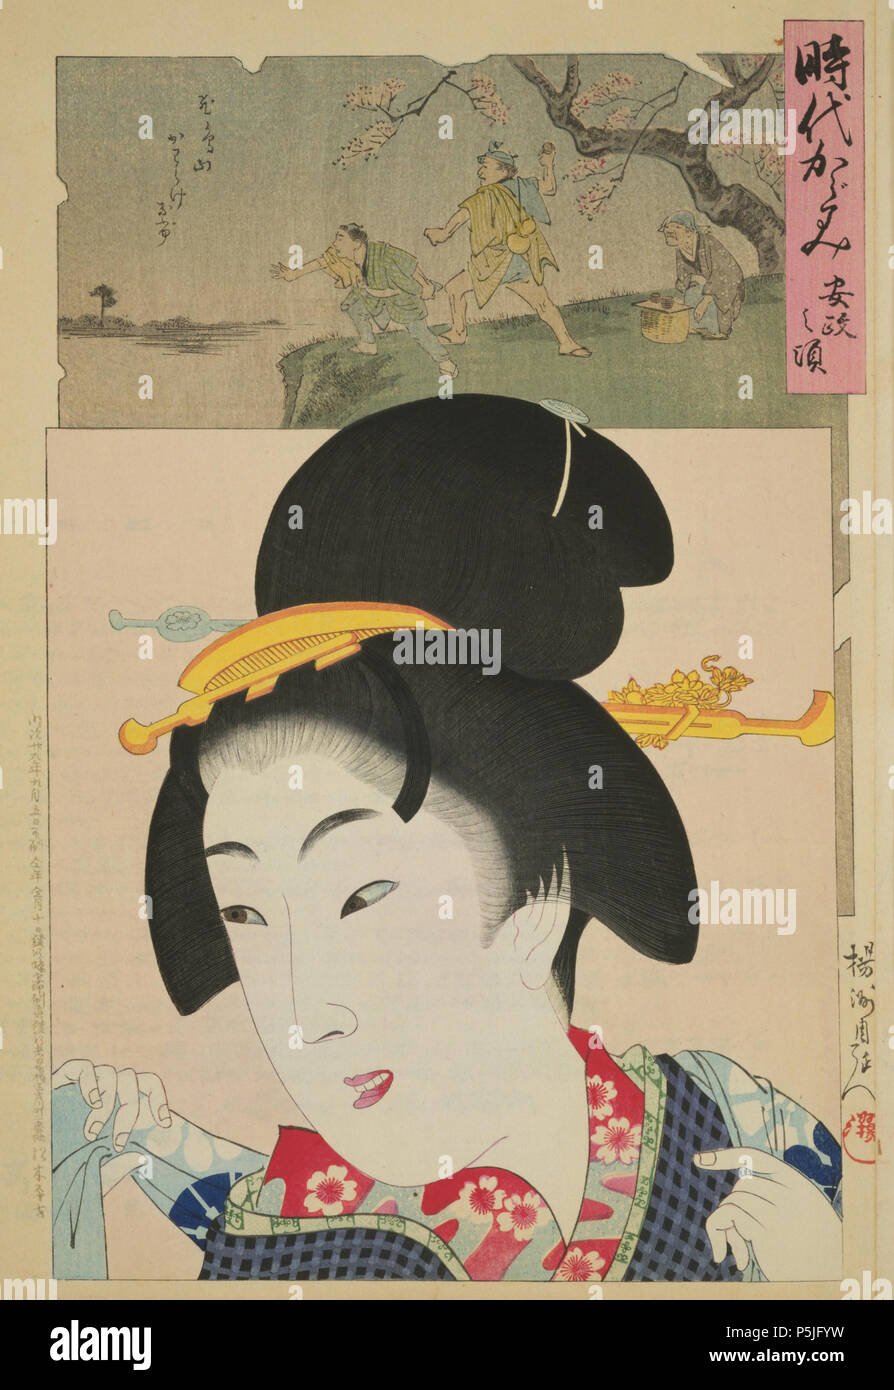 Kagami Jidai ( le miroir de l'âge de série ) pas de koro (Ansei ère Ansei), 1896, l'artiste Yōshū Chikanobu Toyohara ( ) (1838-1912). Shimadamage style de cheveux est vu. Banque D'Images